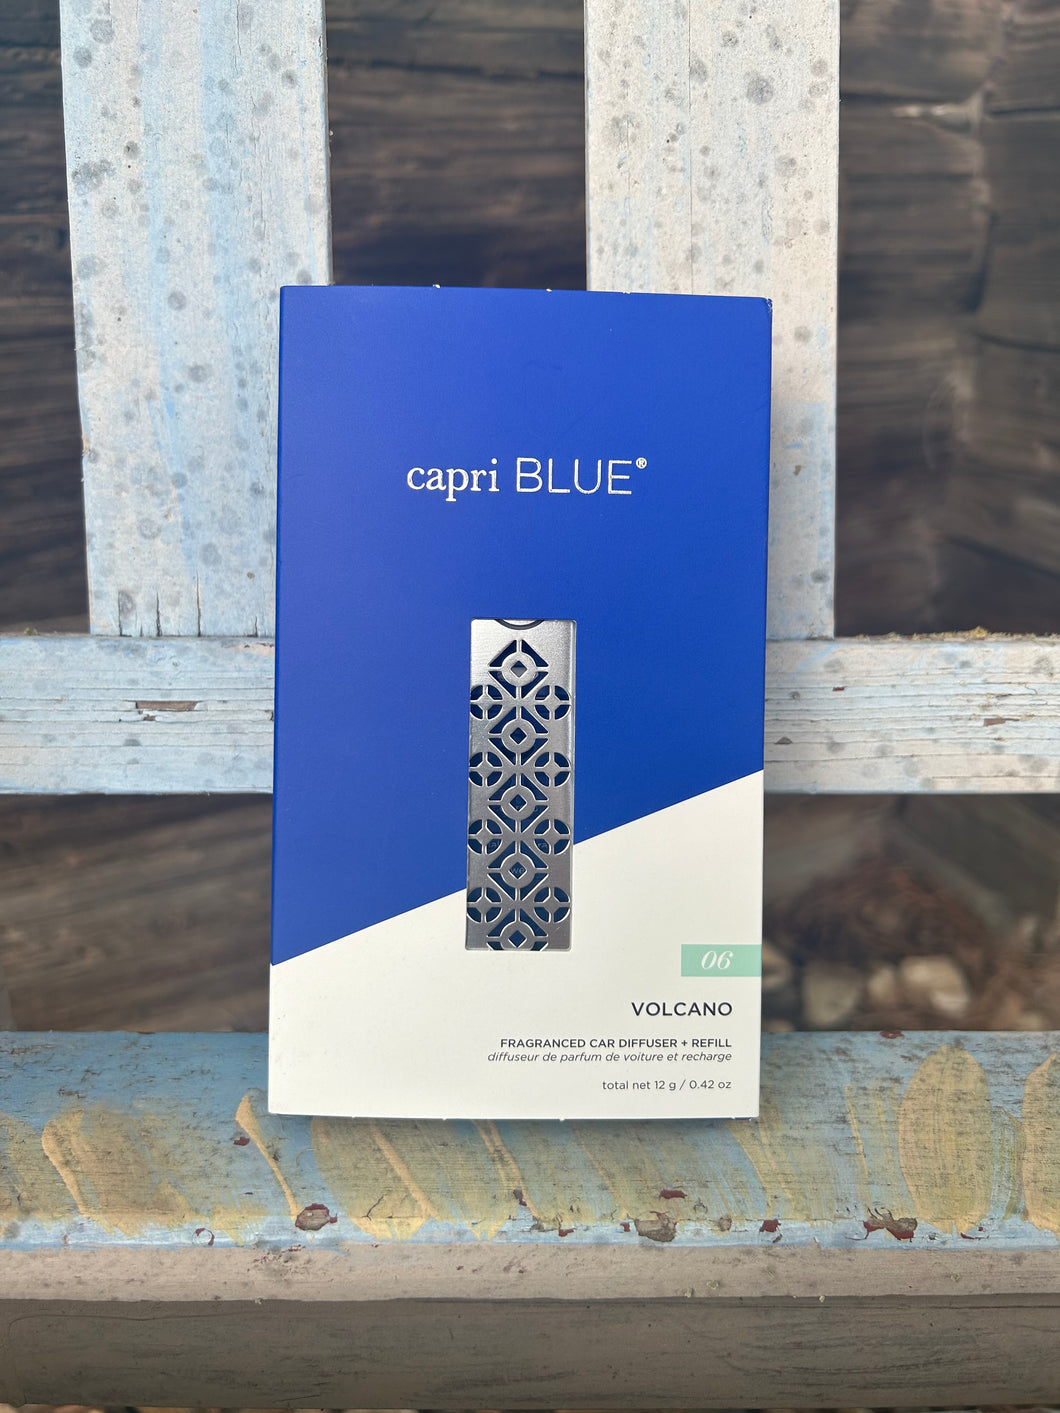 Capri Blue Fragranced Car Diffuser + Refill